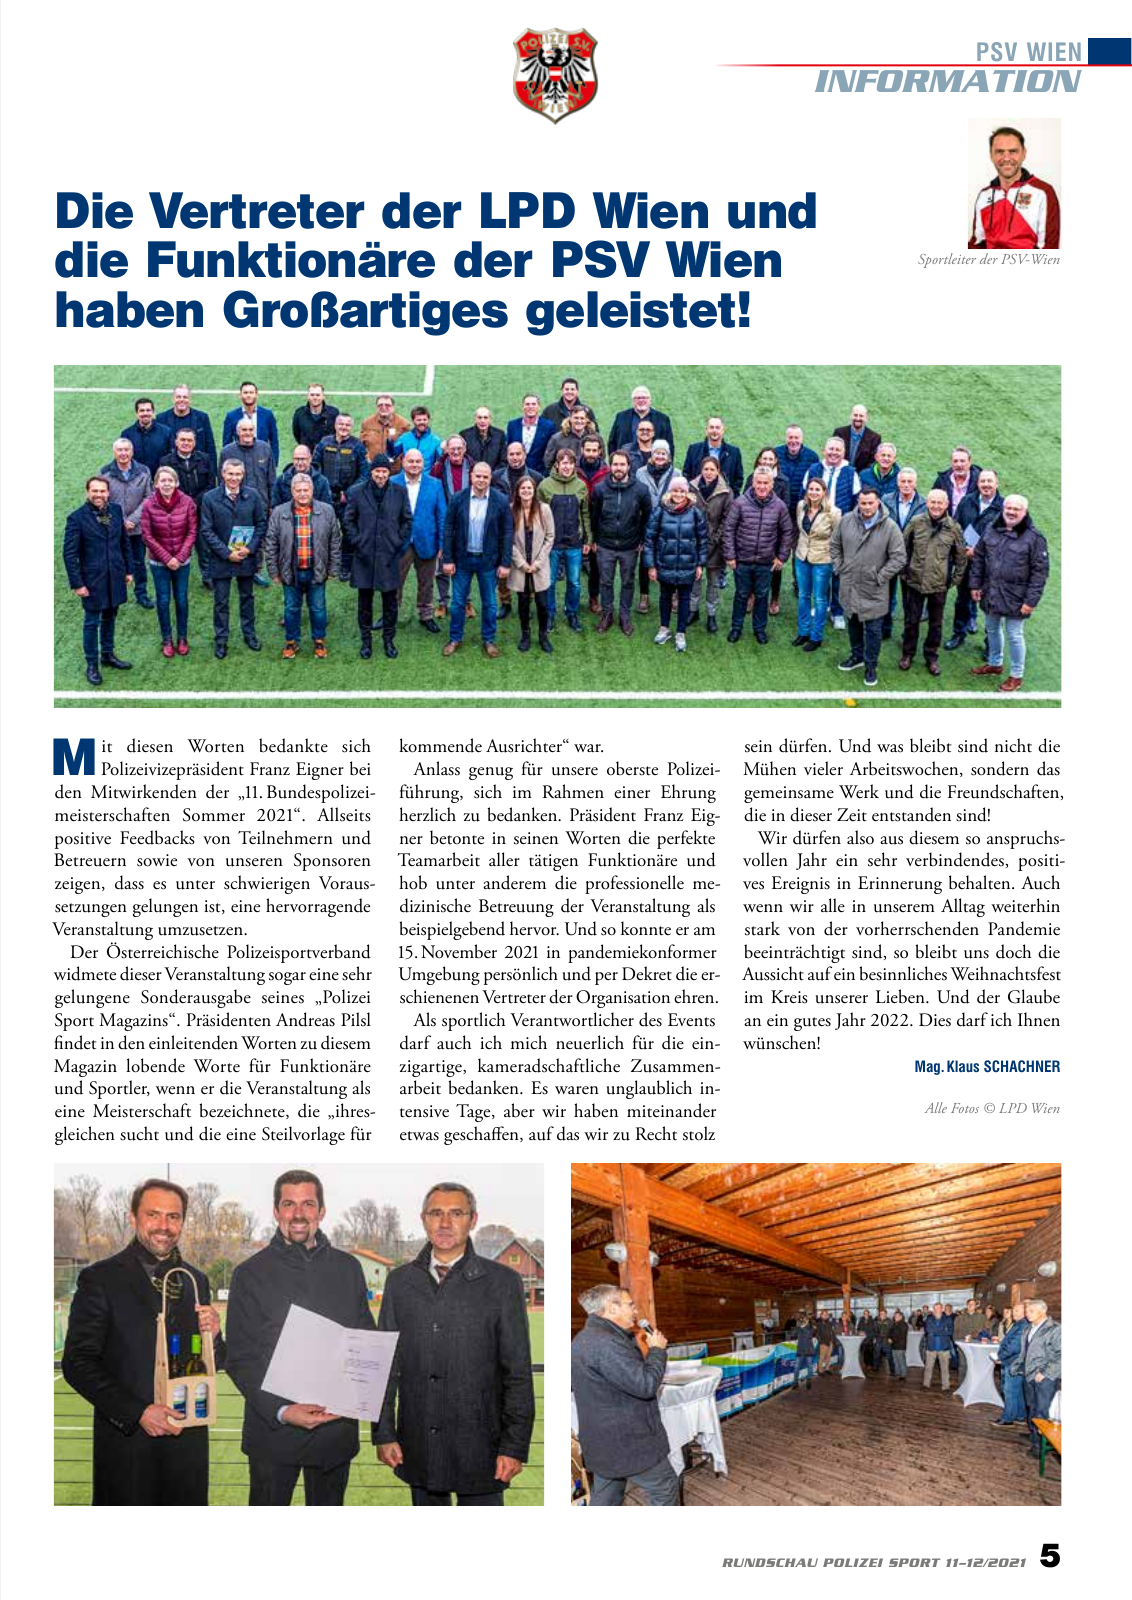 Vorschau Rundschau Polizei Sport 11-12/2021 Seite 5